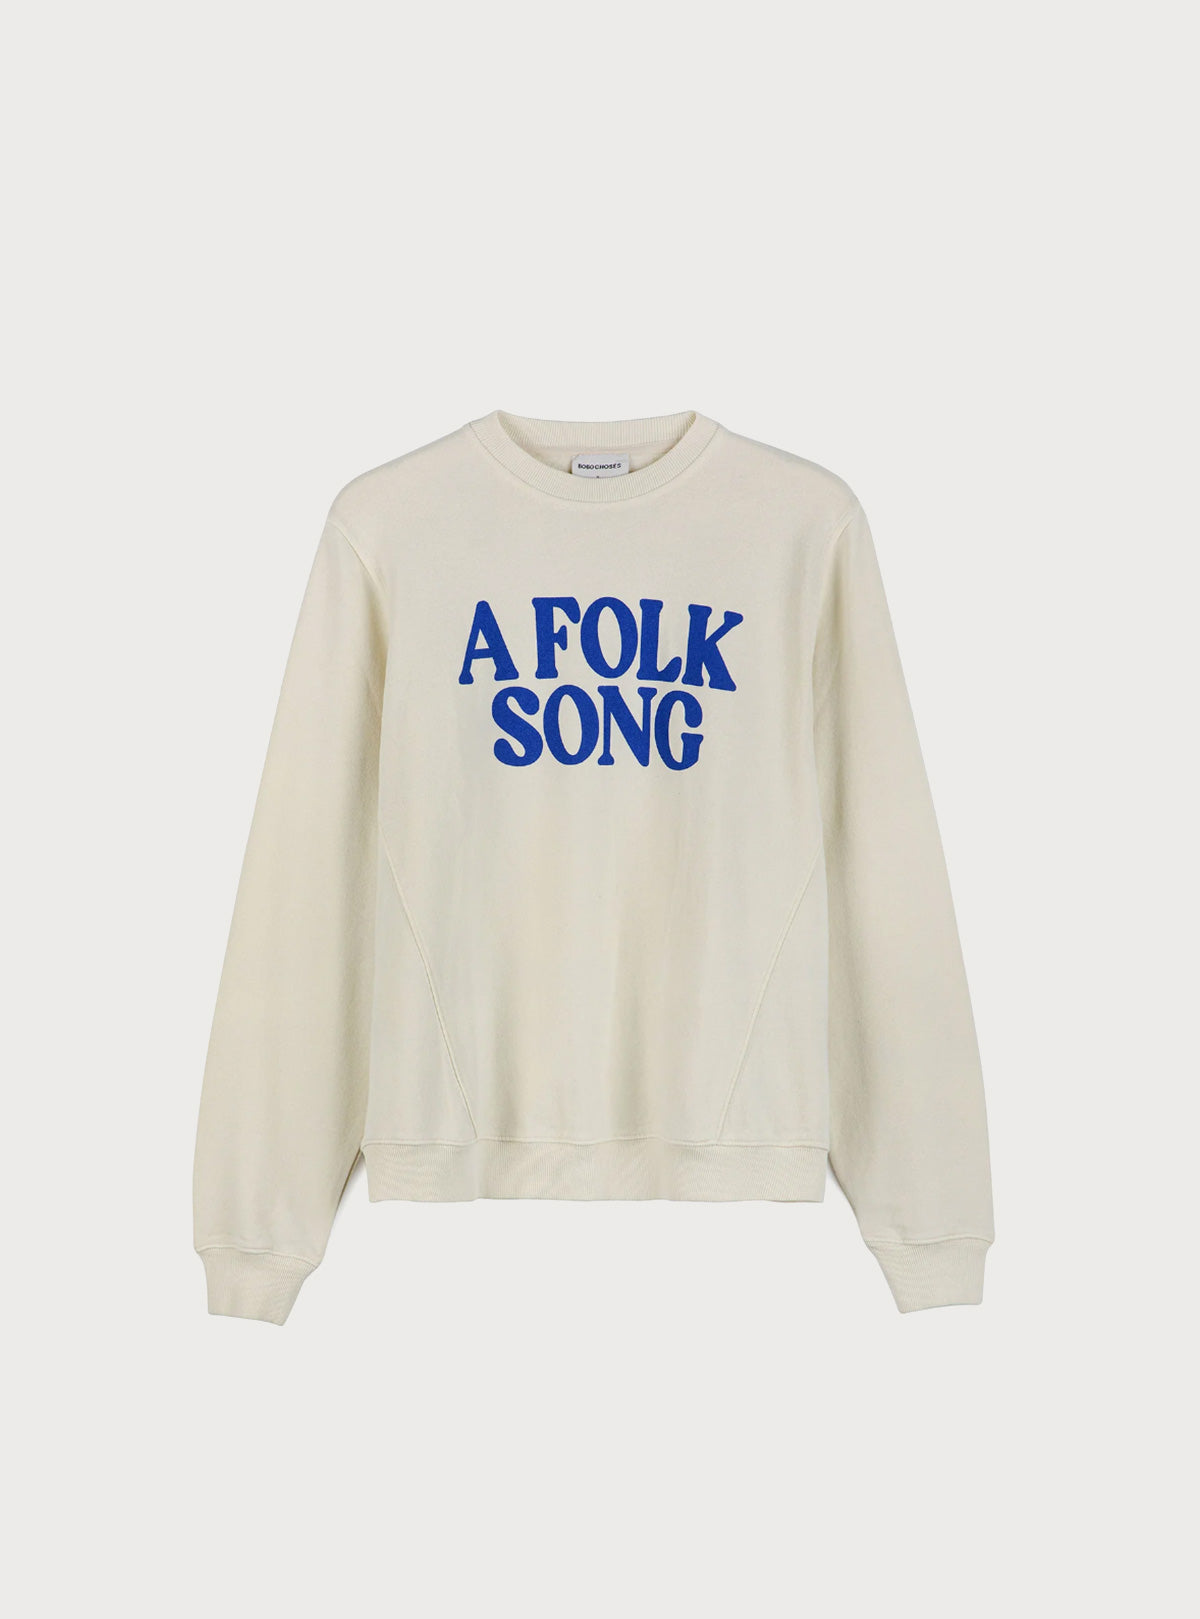 Bobo - Folk Song - OFW